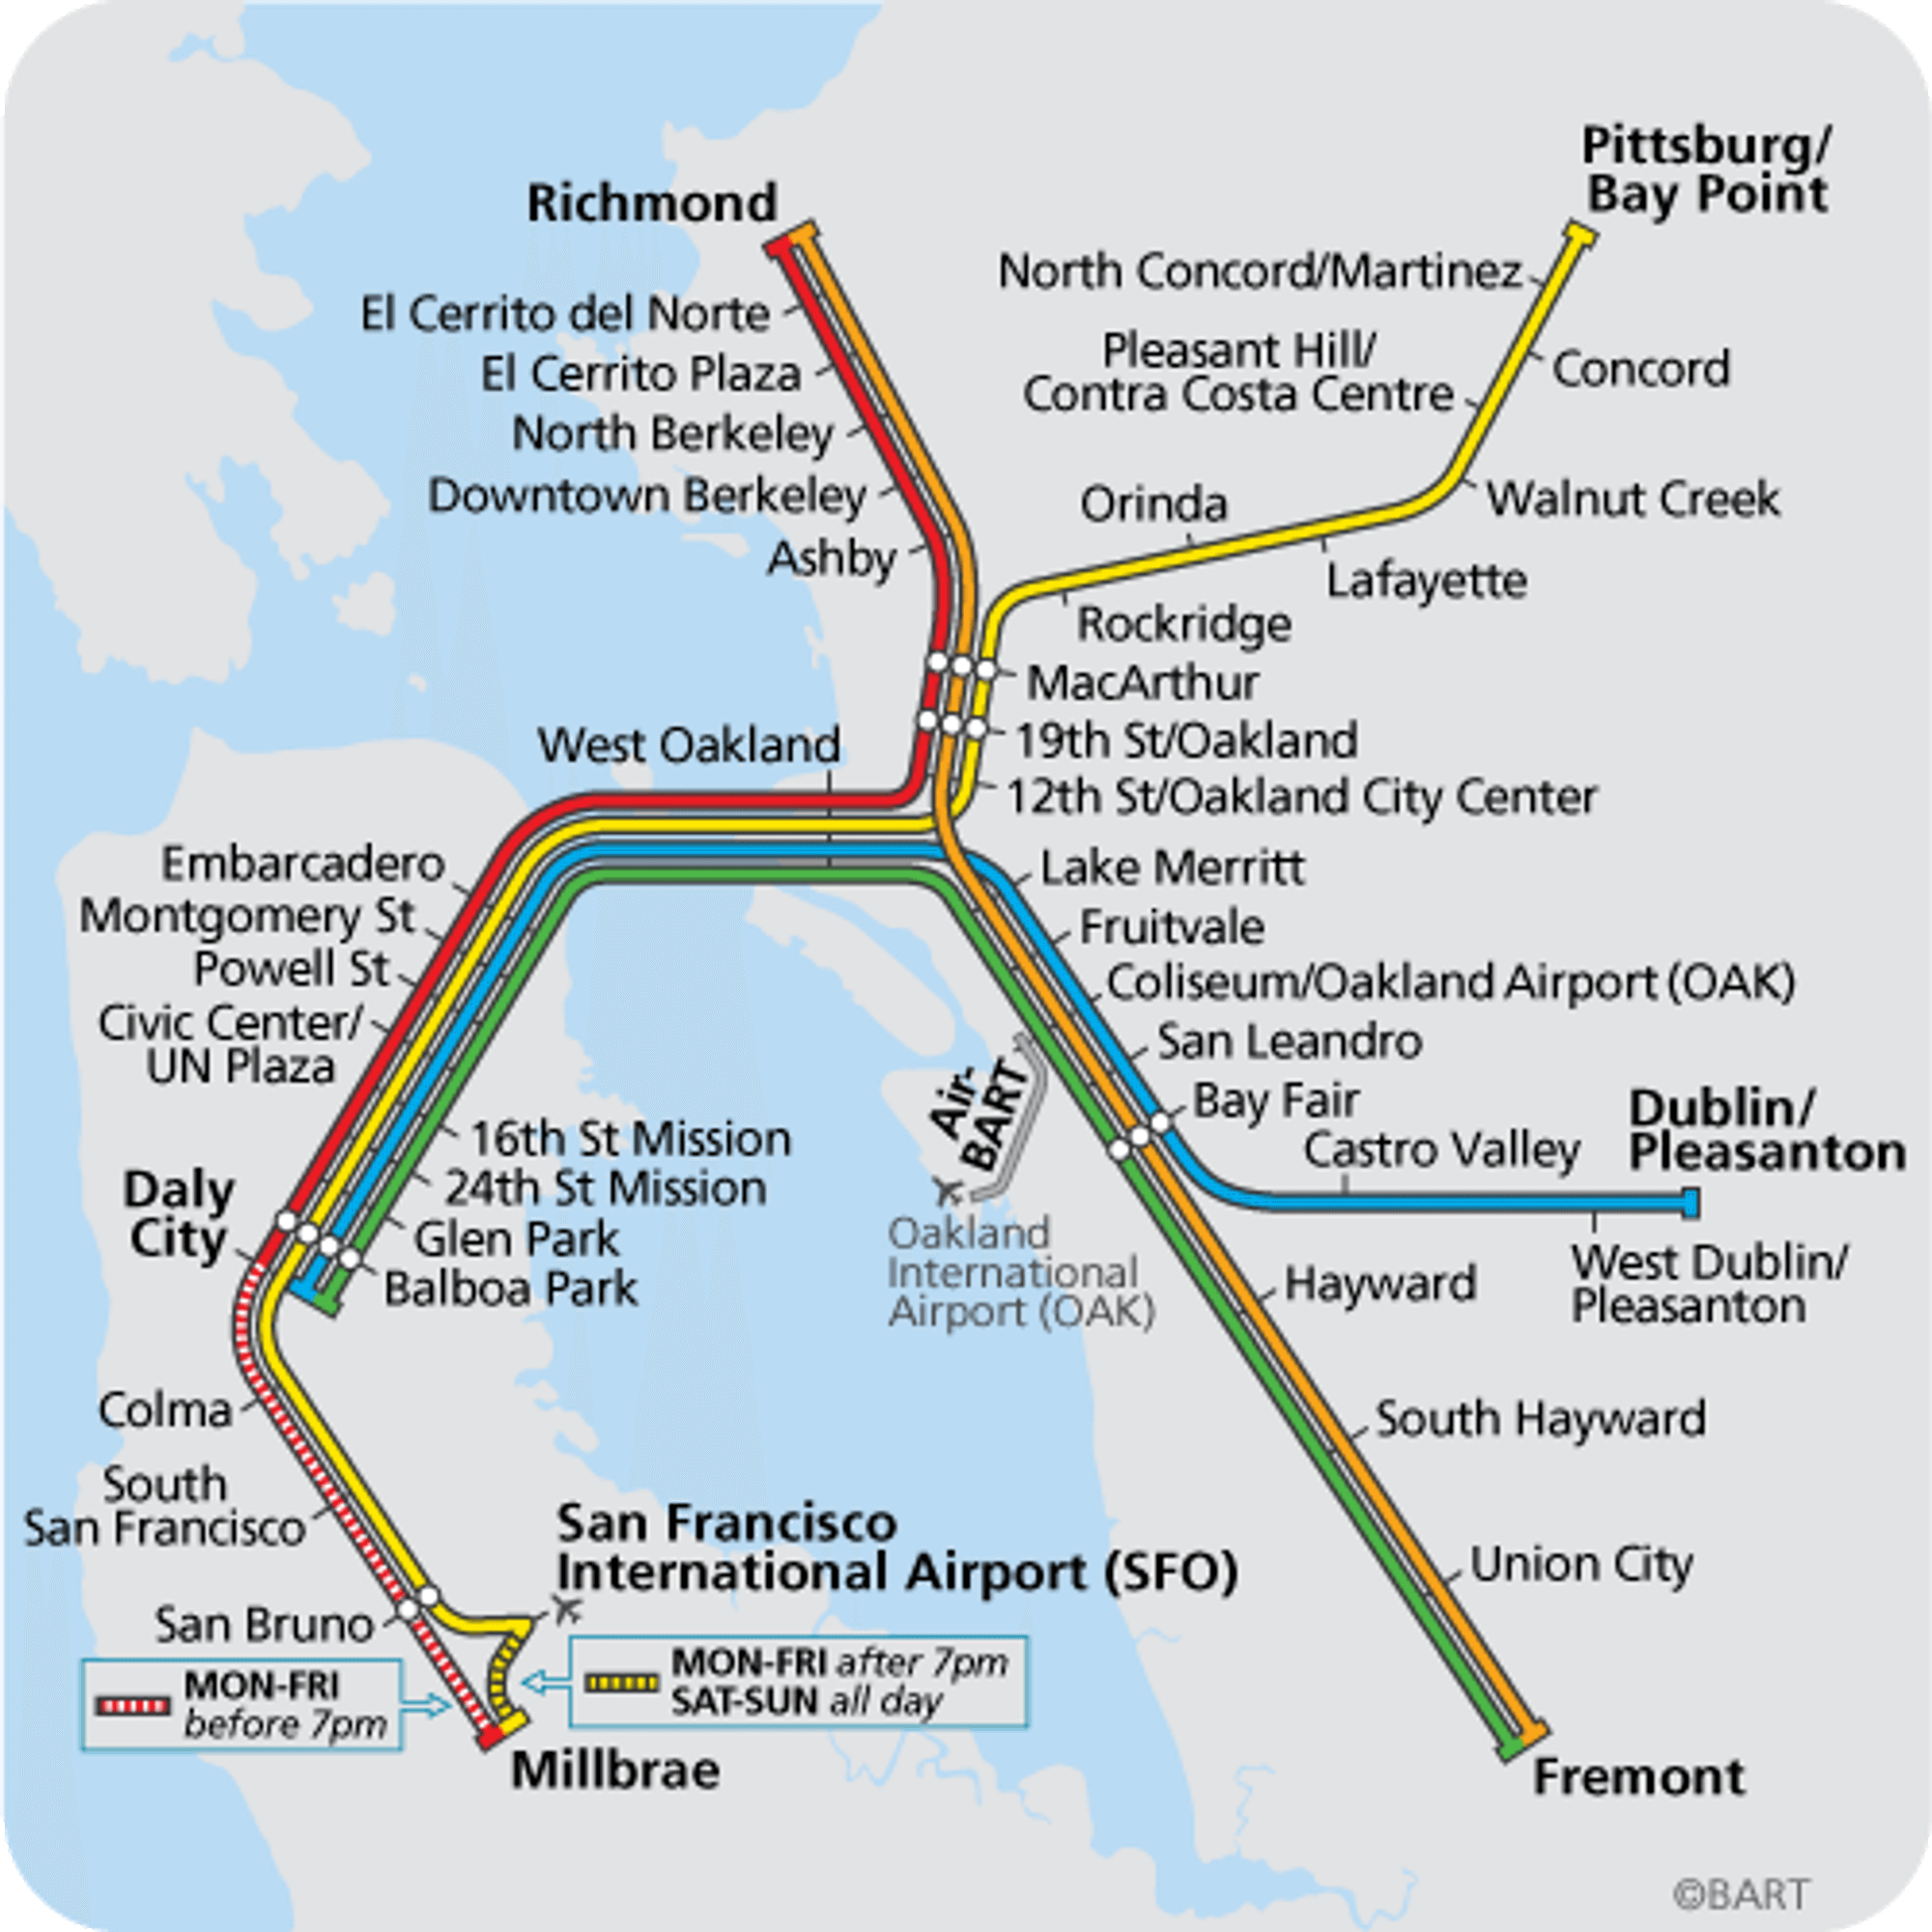 Bay Area Rapid Transfer (BART) binder sammen alle de store tettstedene i og rundt San Francisco og Oakland.